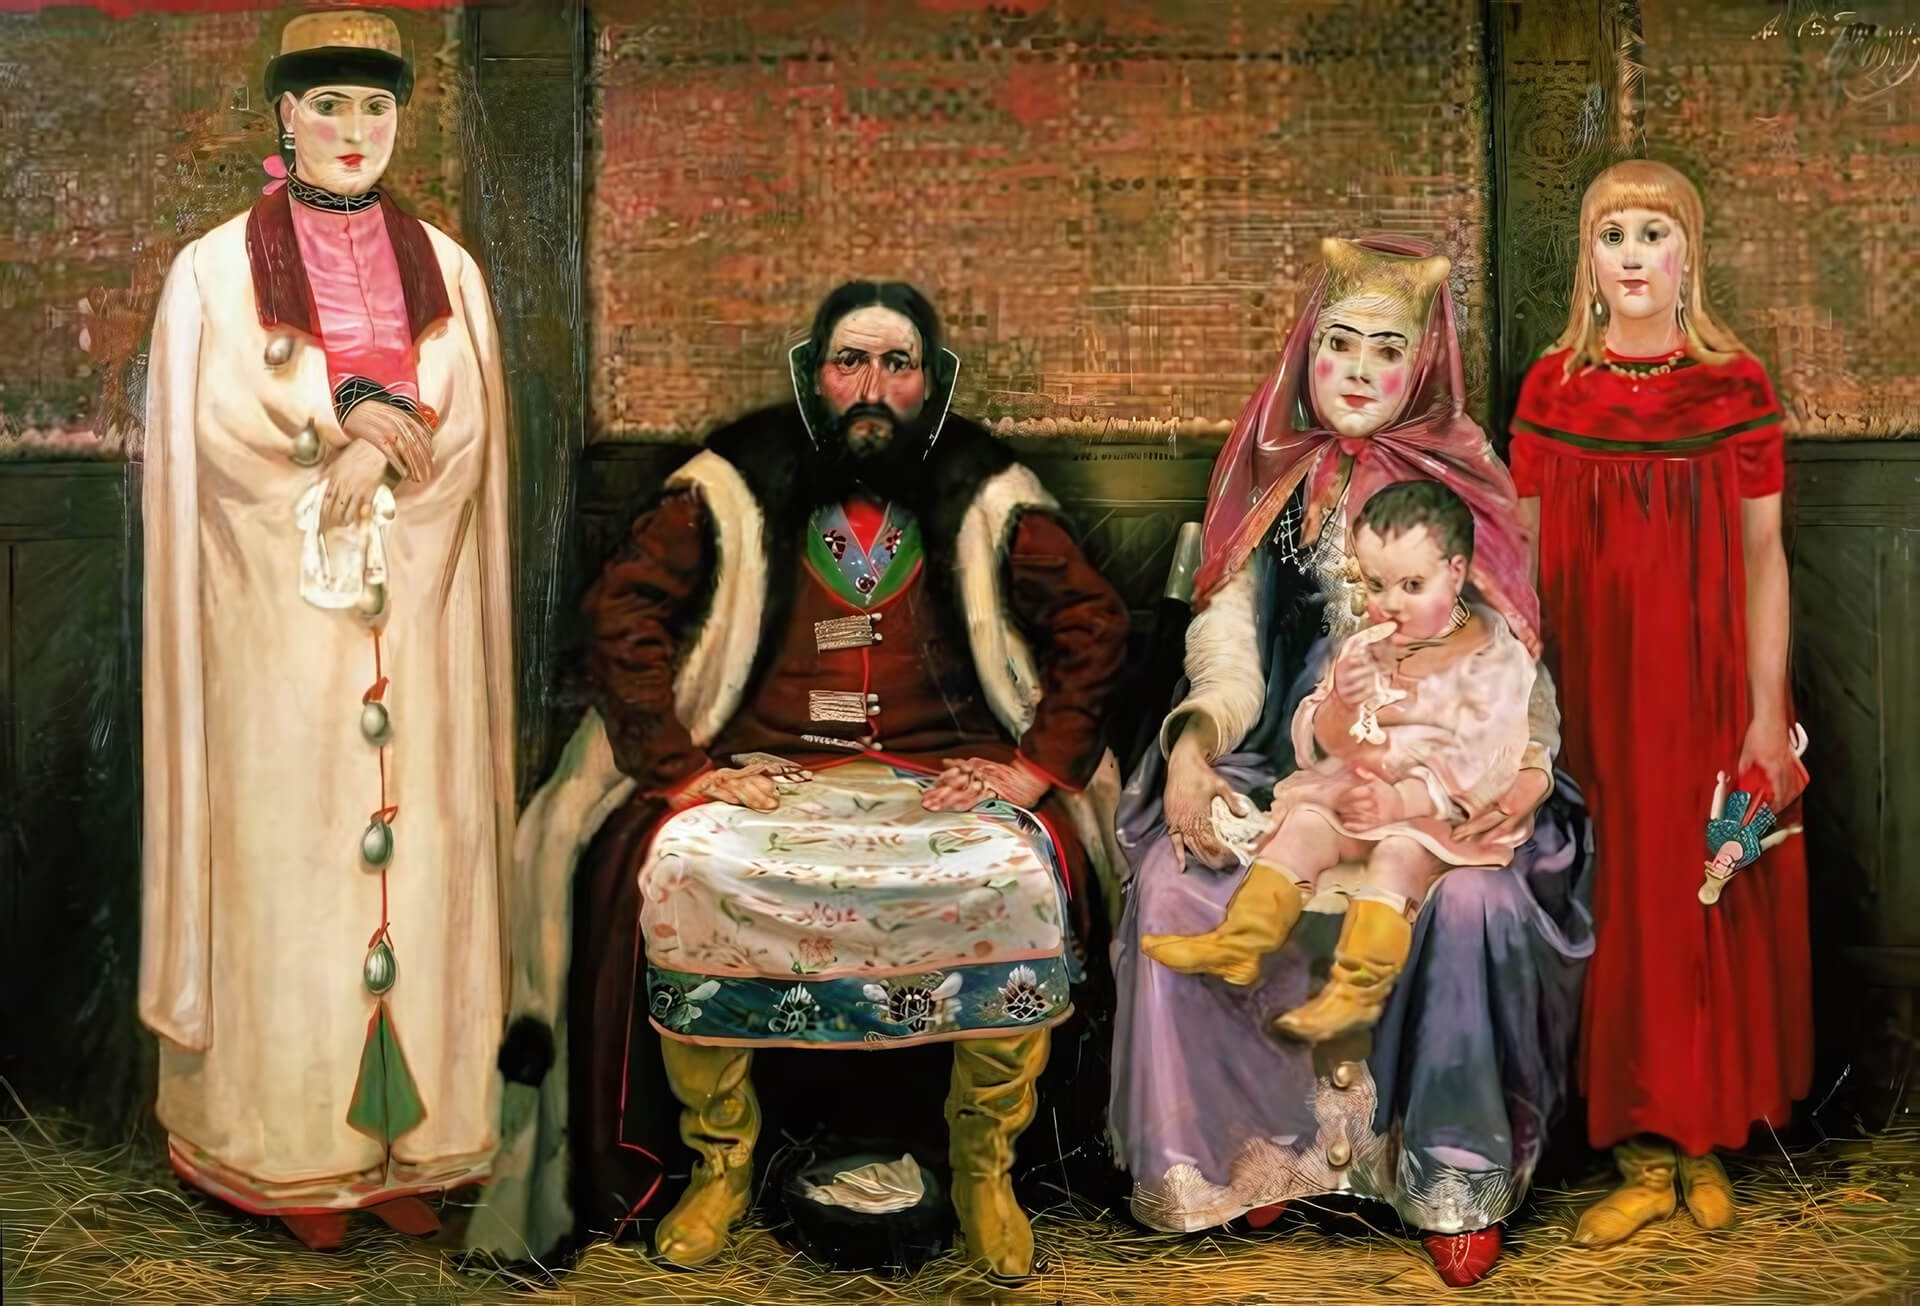 А. Рябушкин "Семья купца в XVII веке"